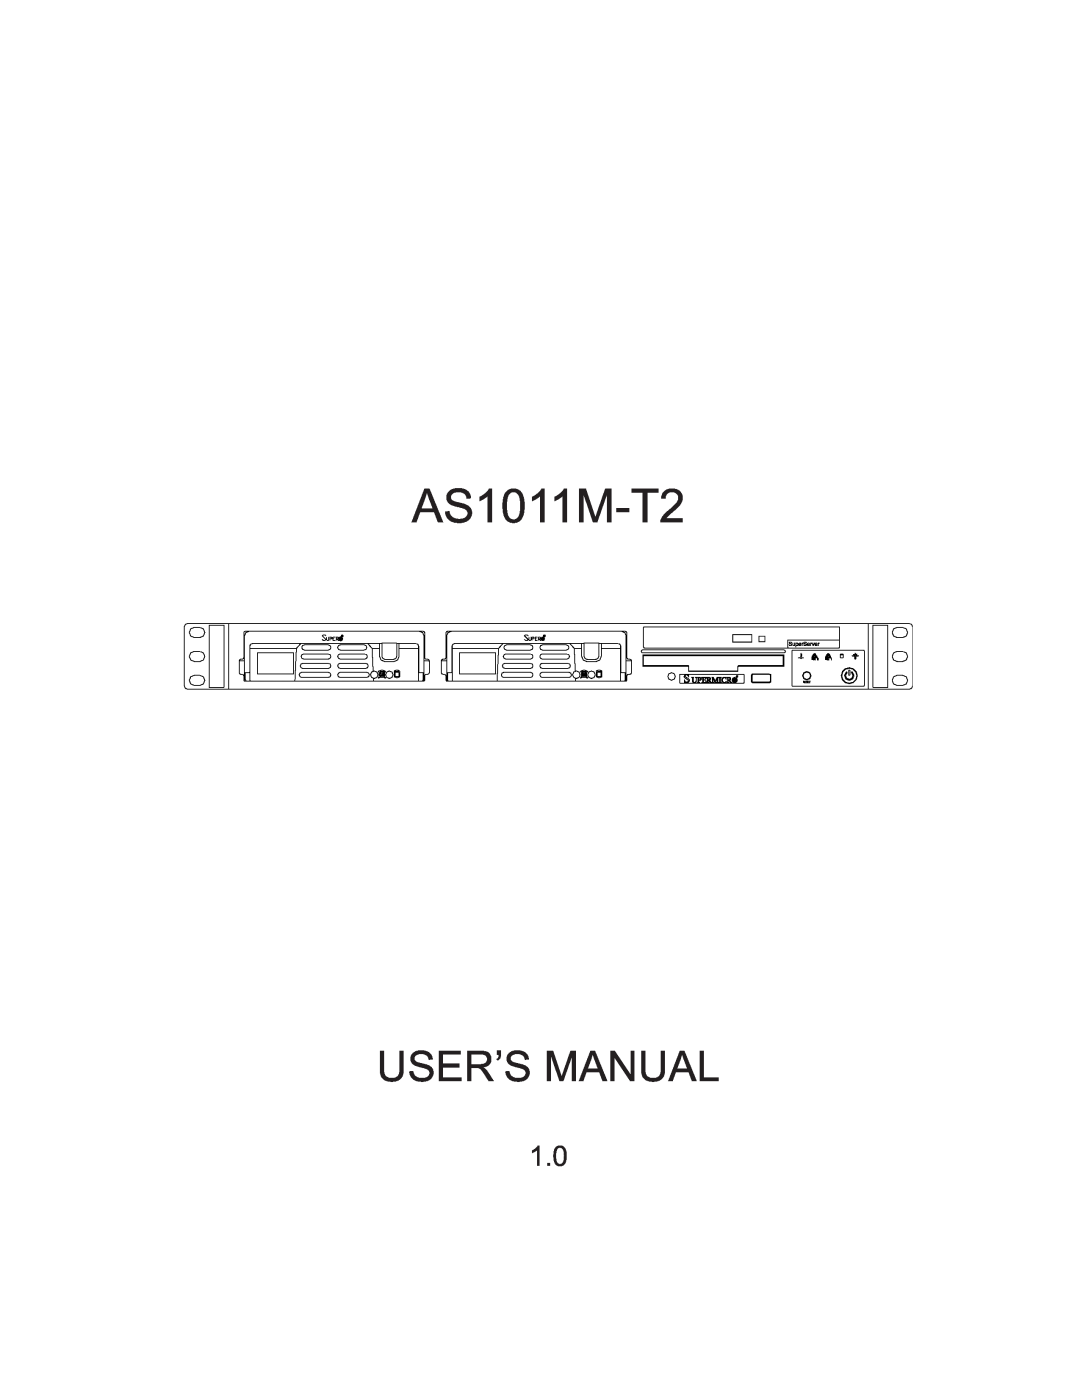 SUPER MICRO Computer AS1011M-T2 user manual User’S Manual 